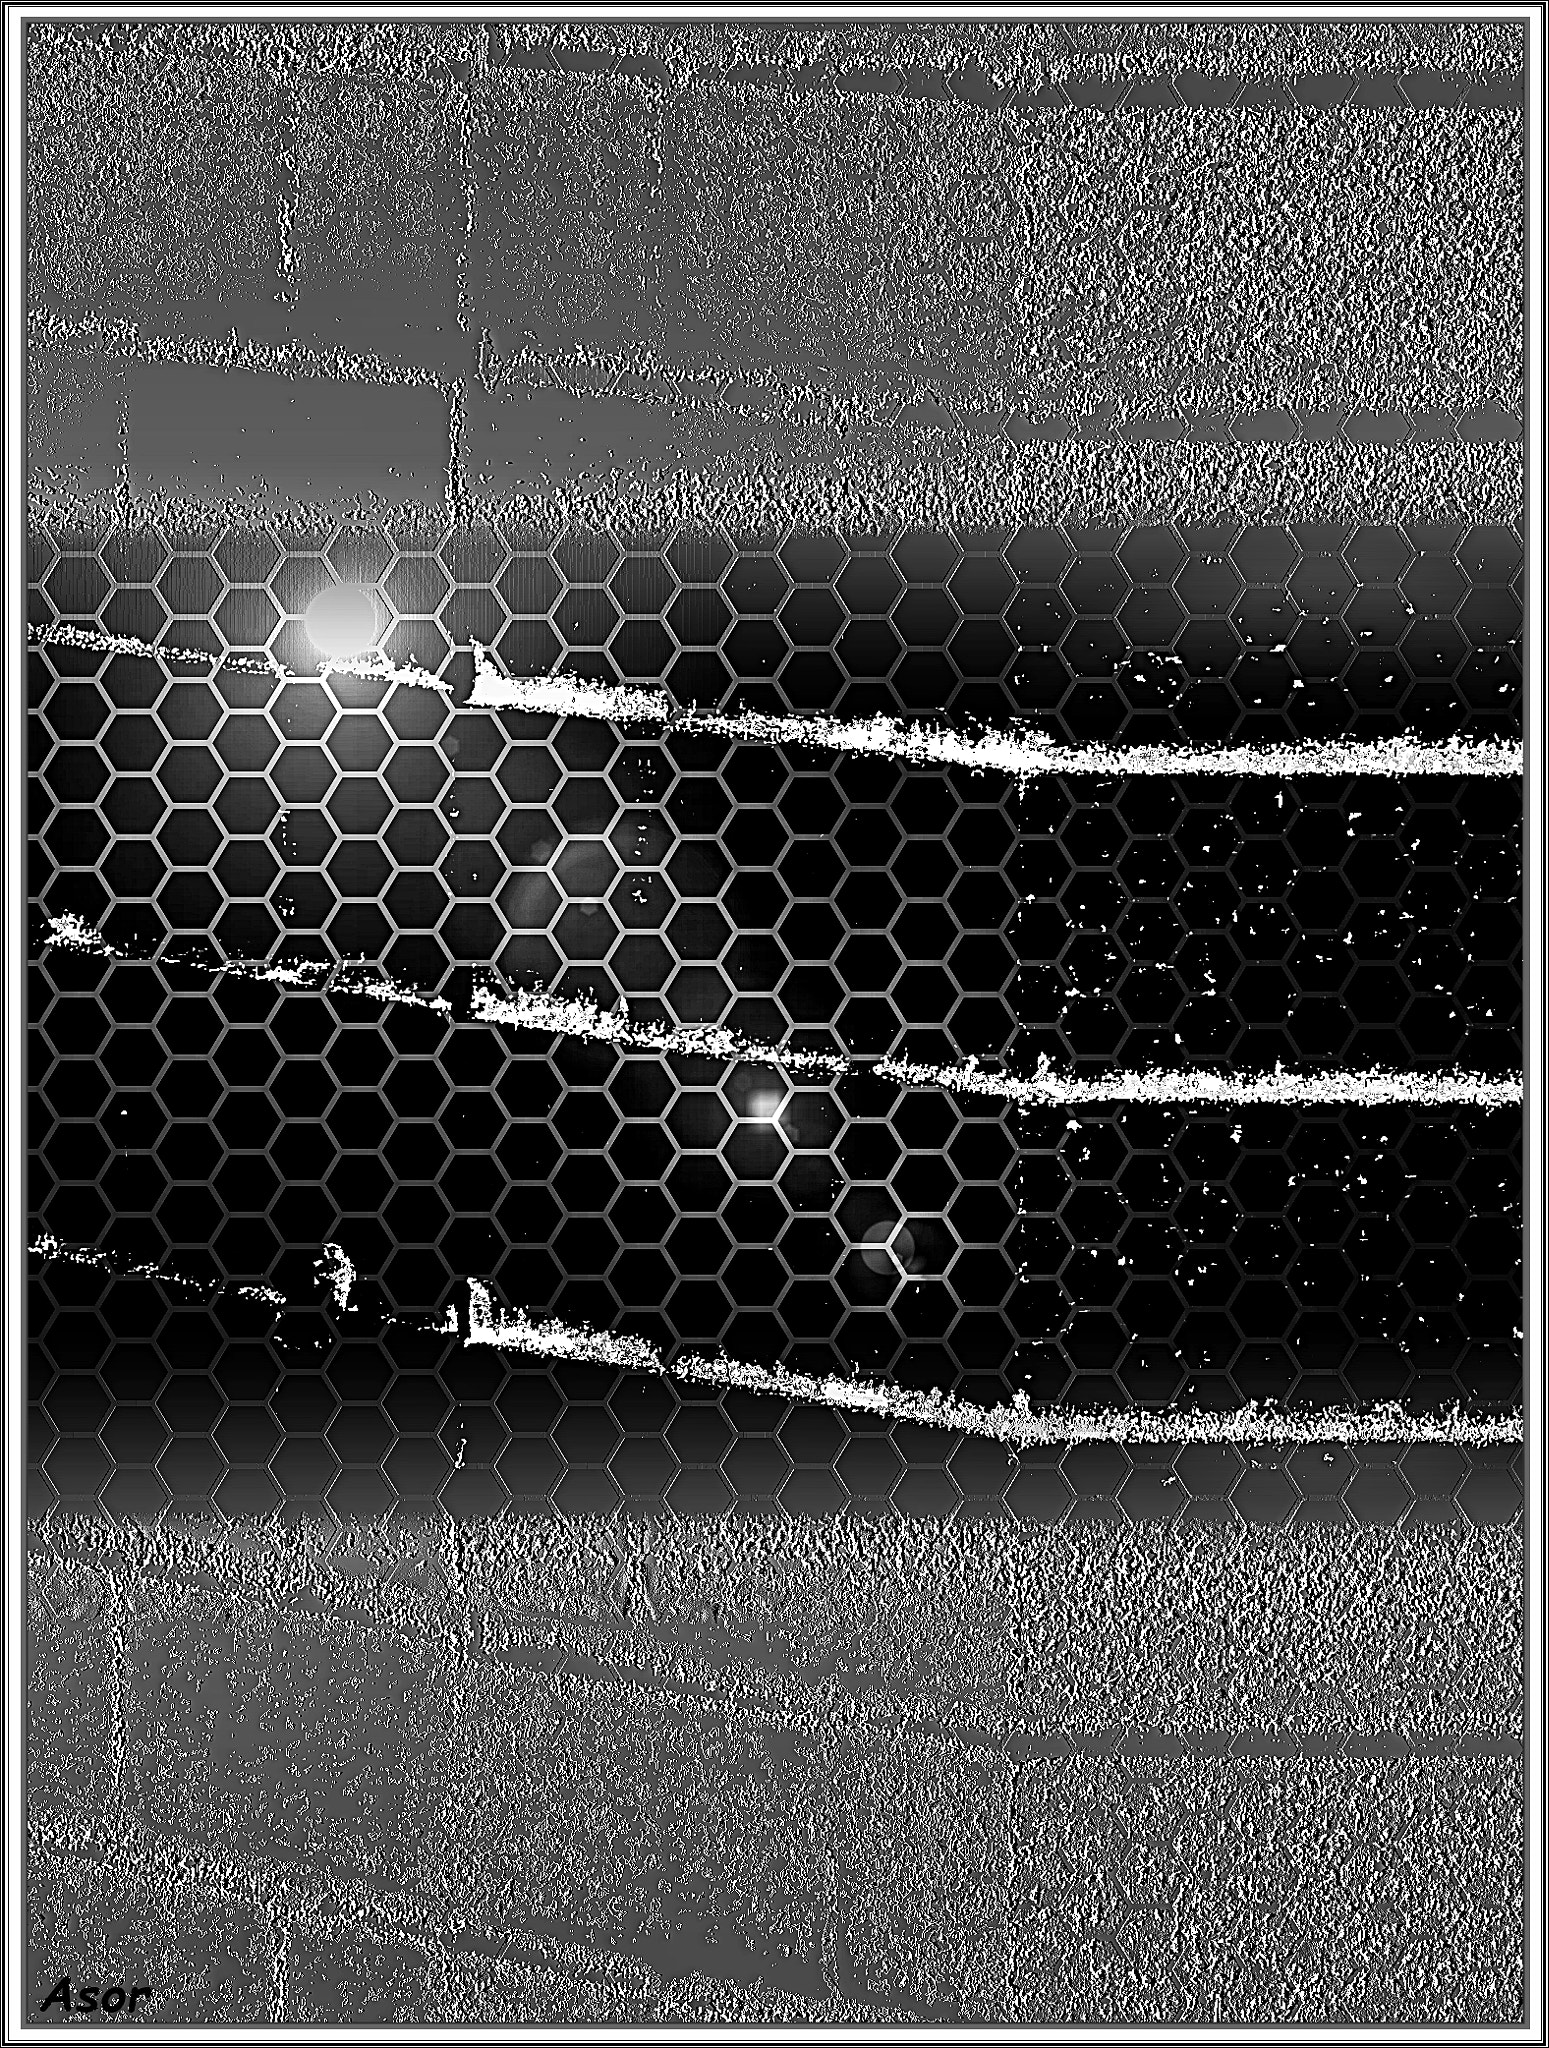 Panasonic Lumix DMC-ZS5 (Lumix DMC-TZ8) sample photo. Urban jail 2 photography